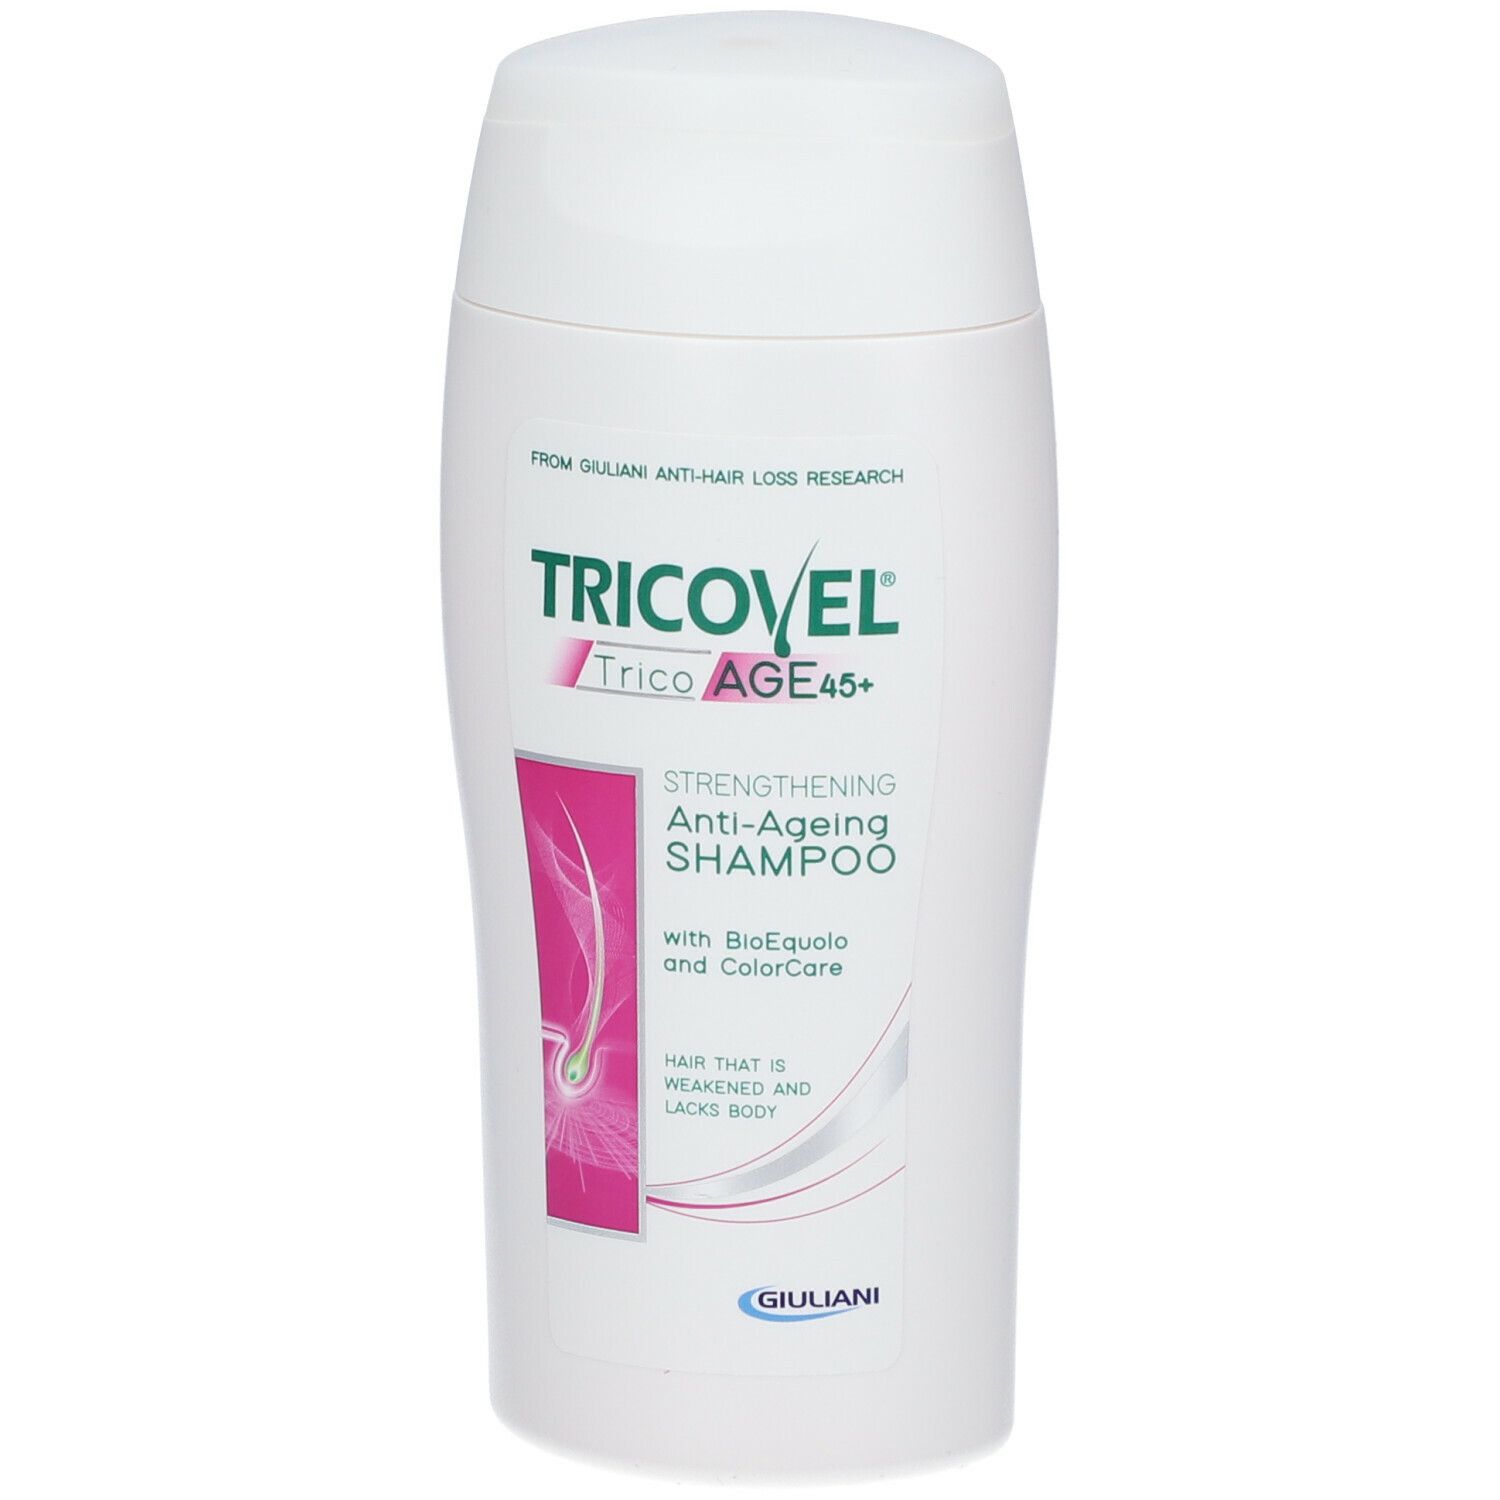 TRICOVEL TricoAGE+ Shampoo